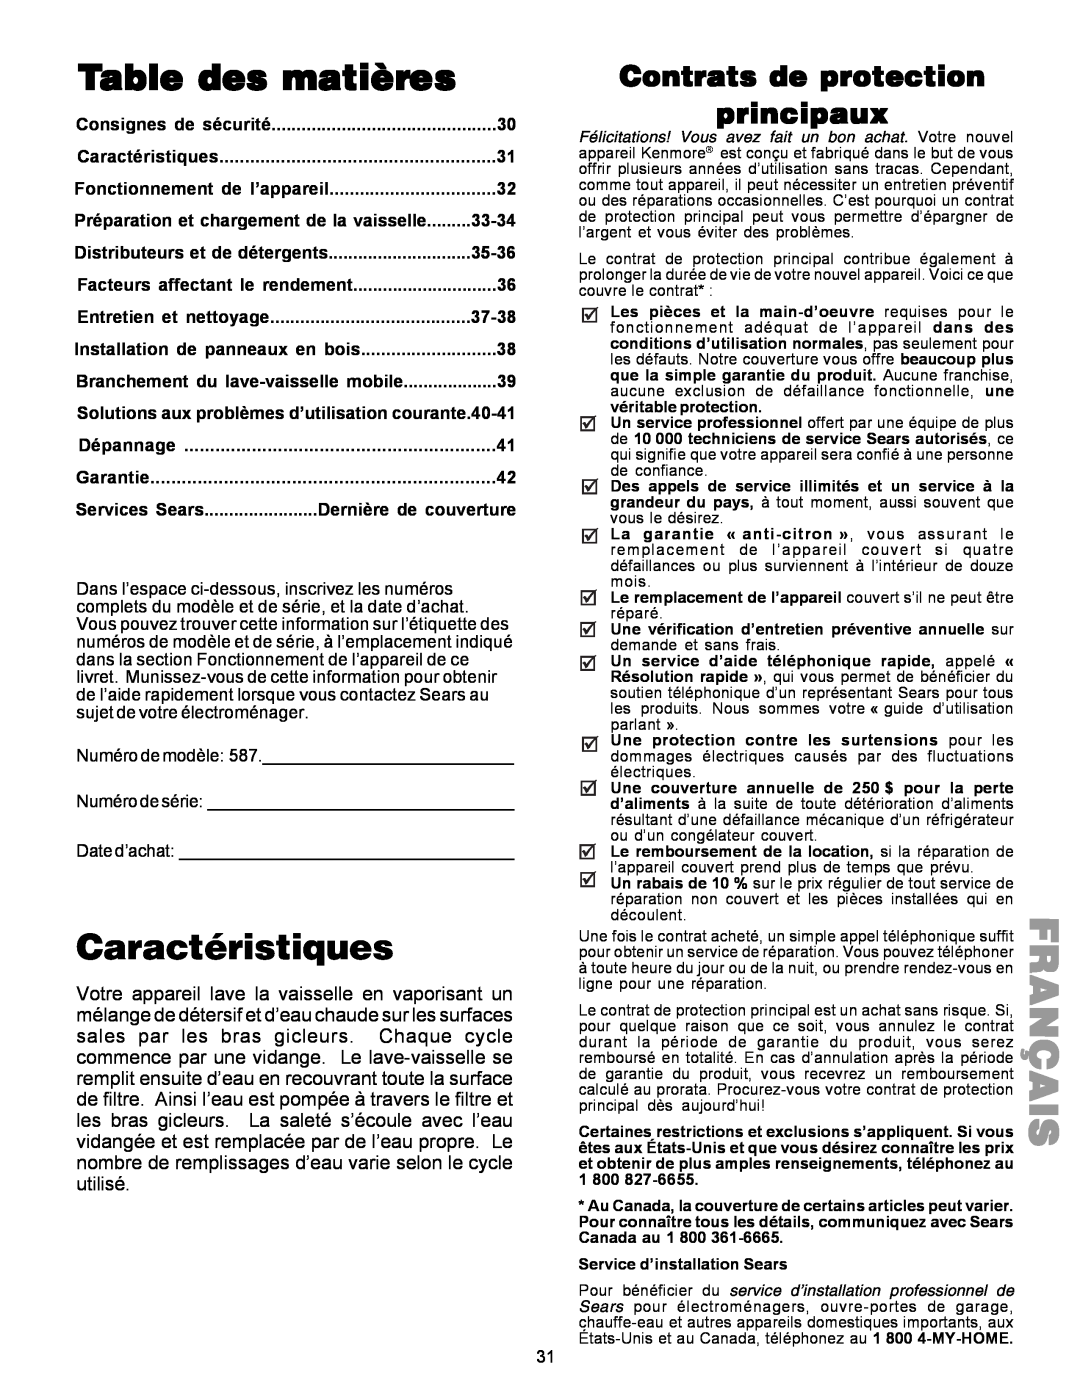 Kenmore 587.144 Français, Table des matières, Caractéristiques, Contrats de protection principaux, Consignes de sécurité 